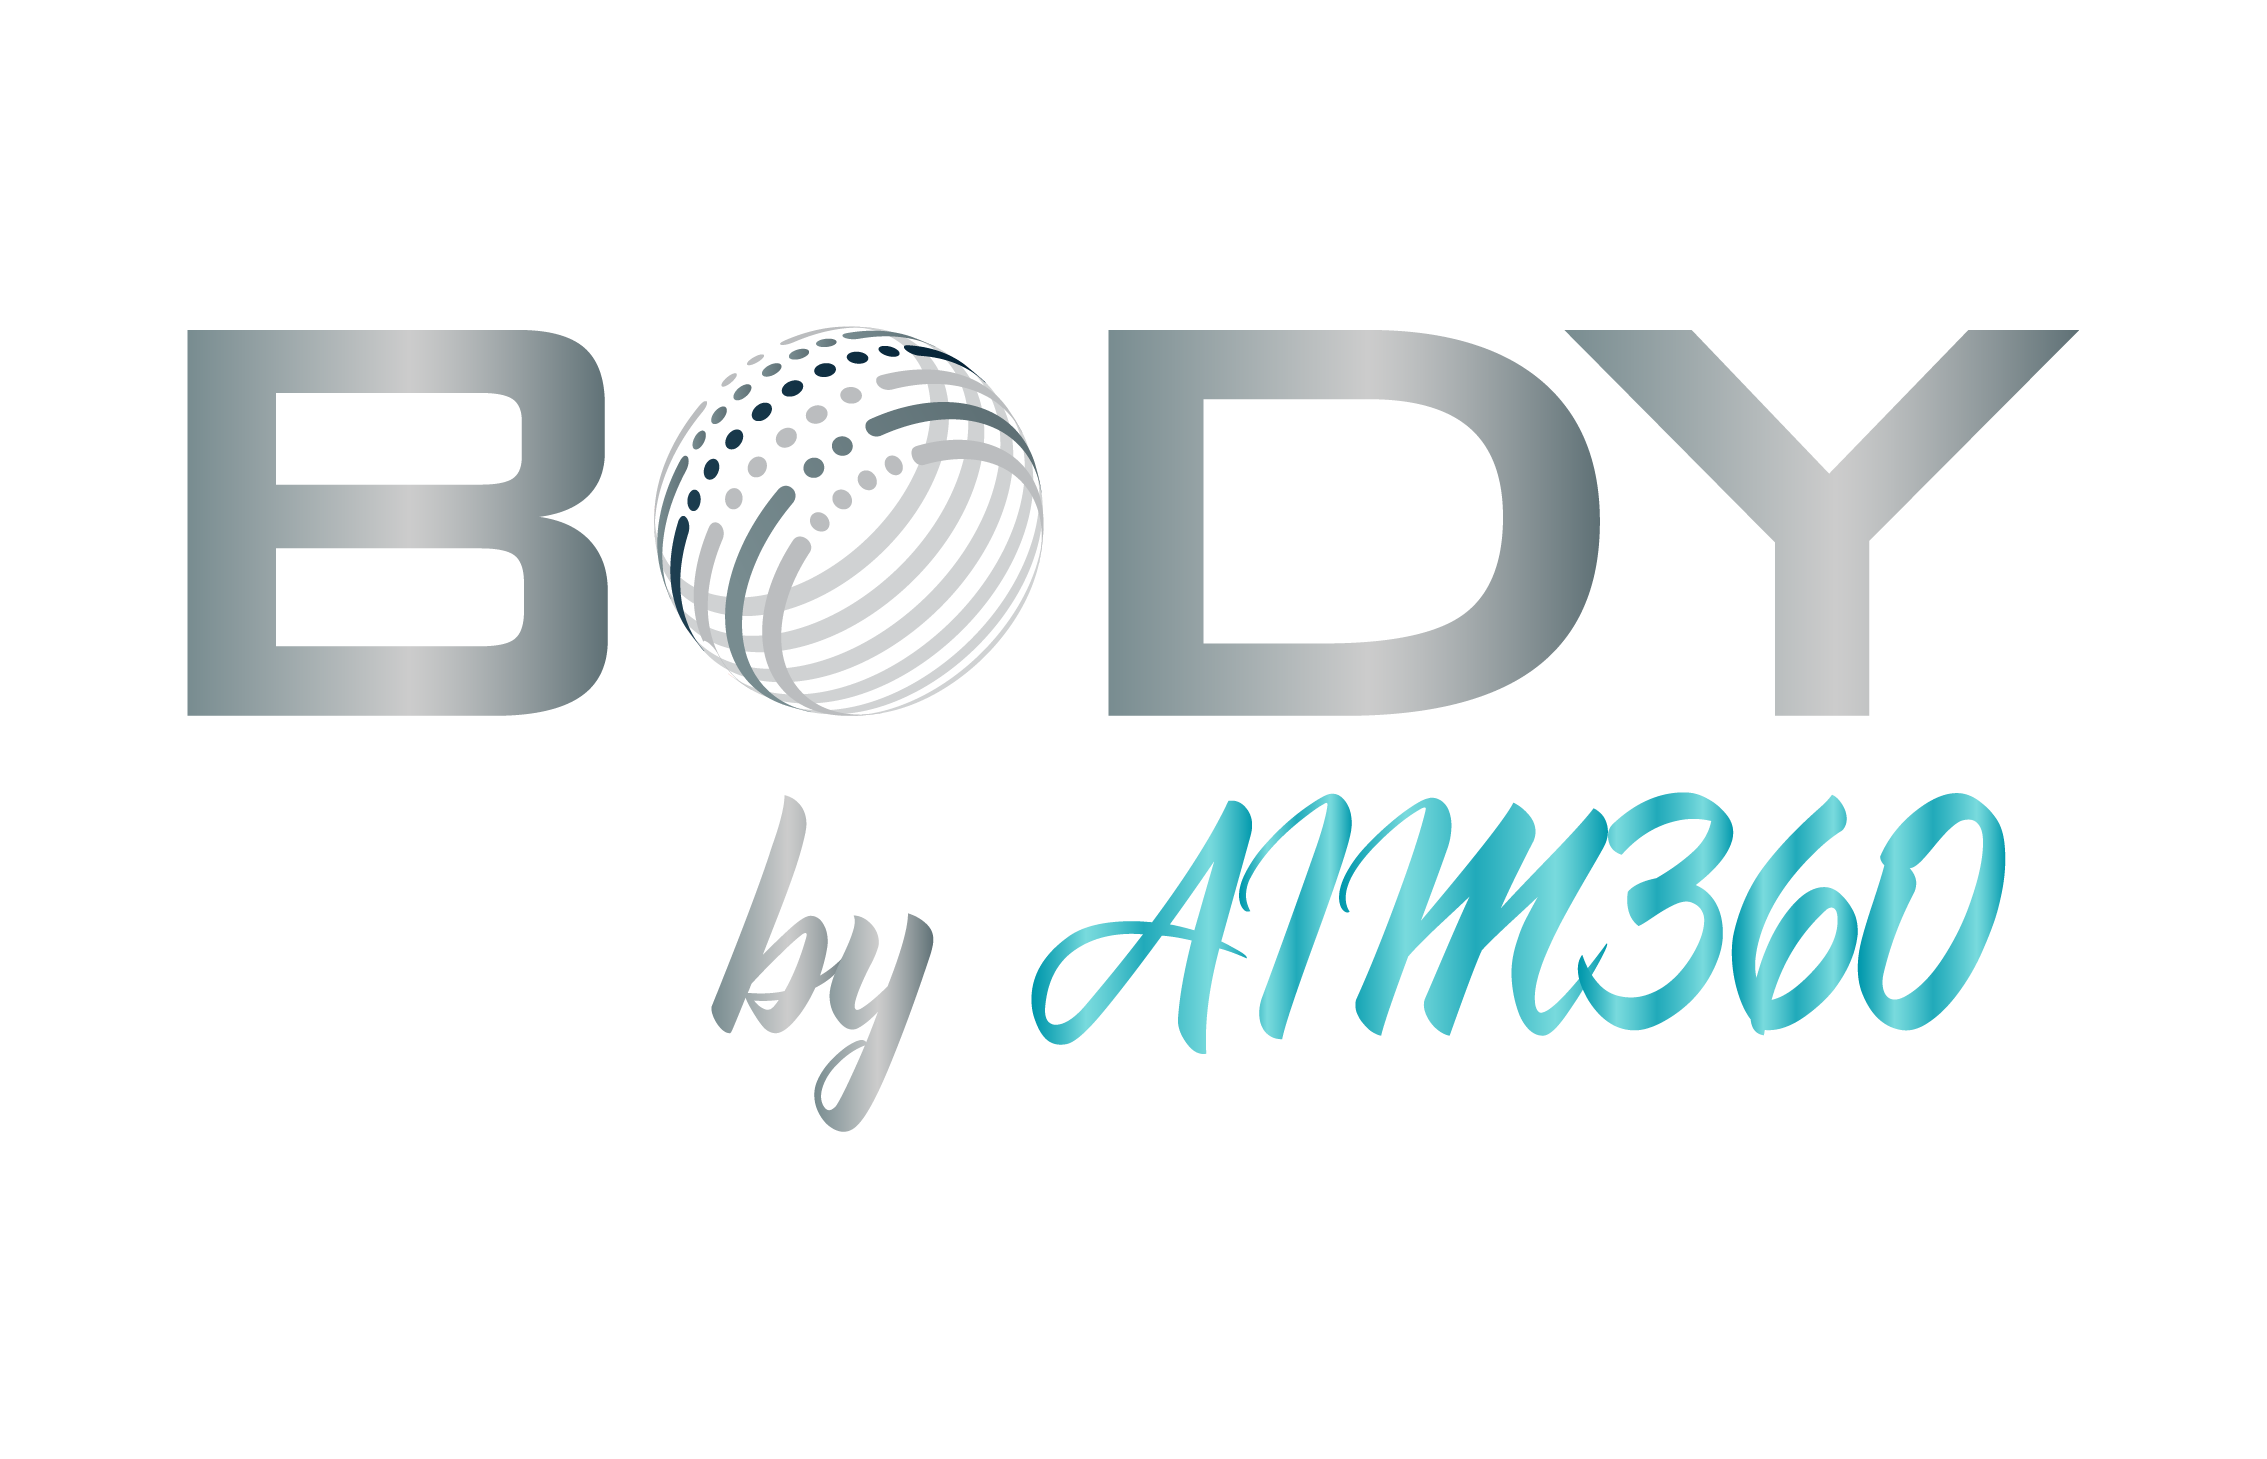 Body by AIM360